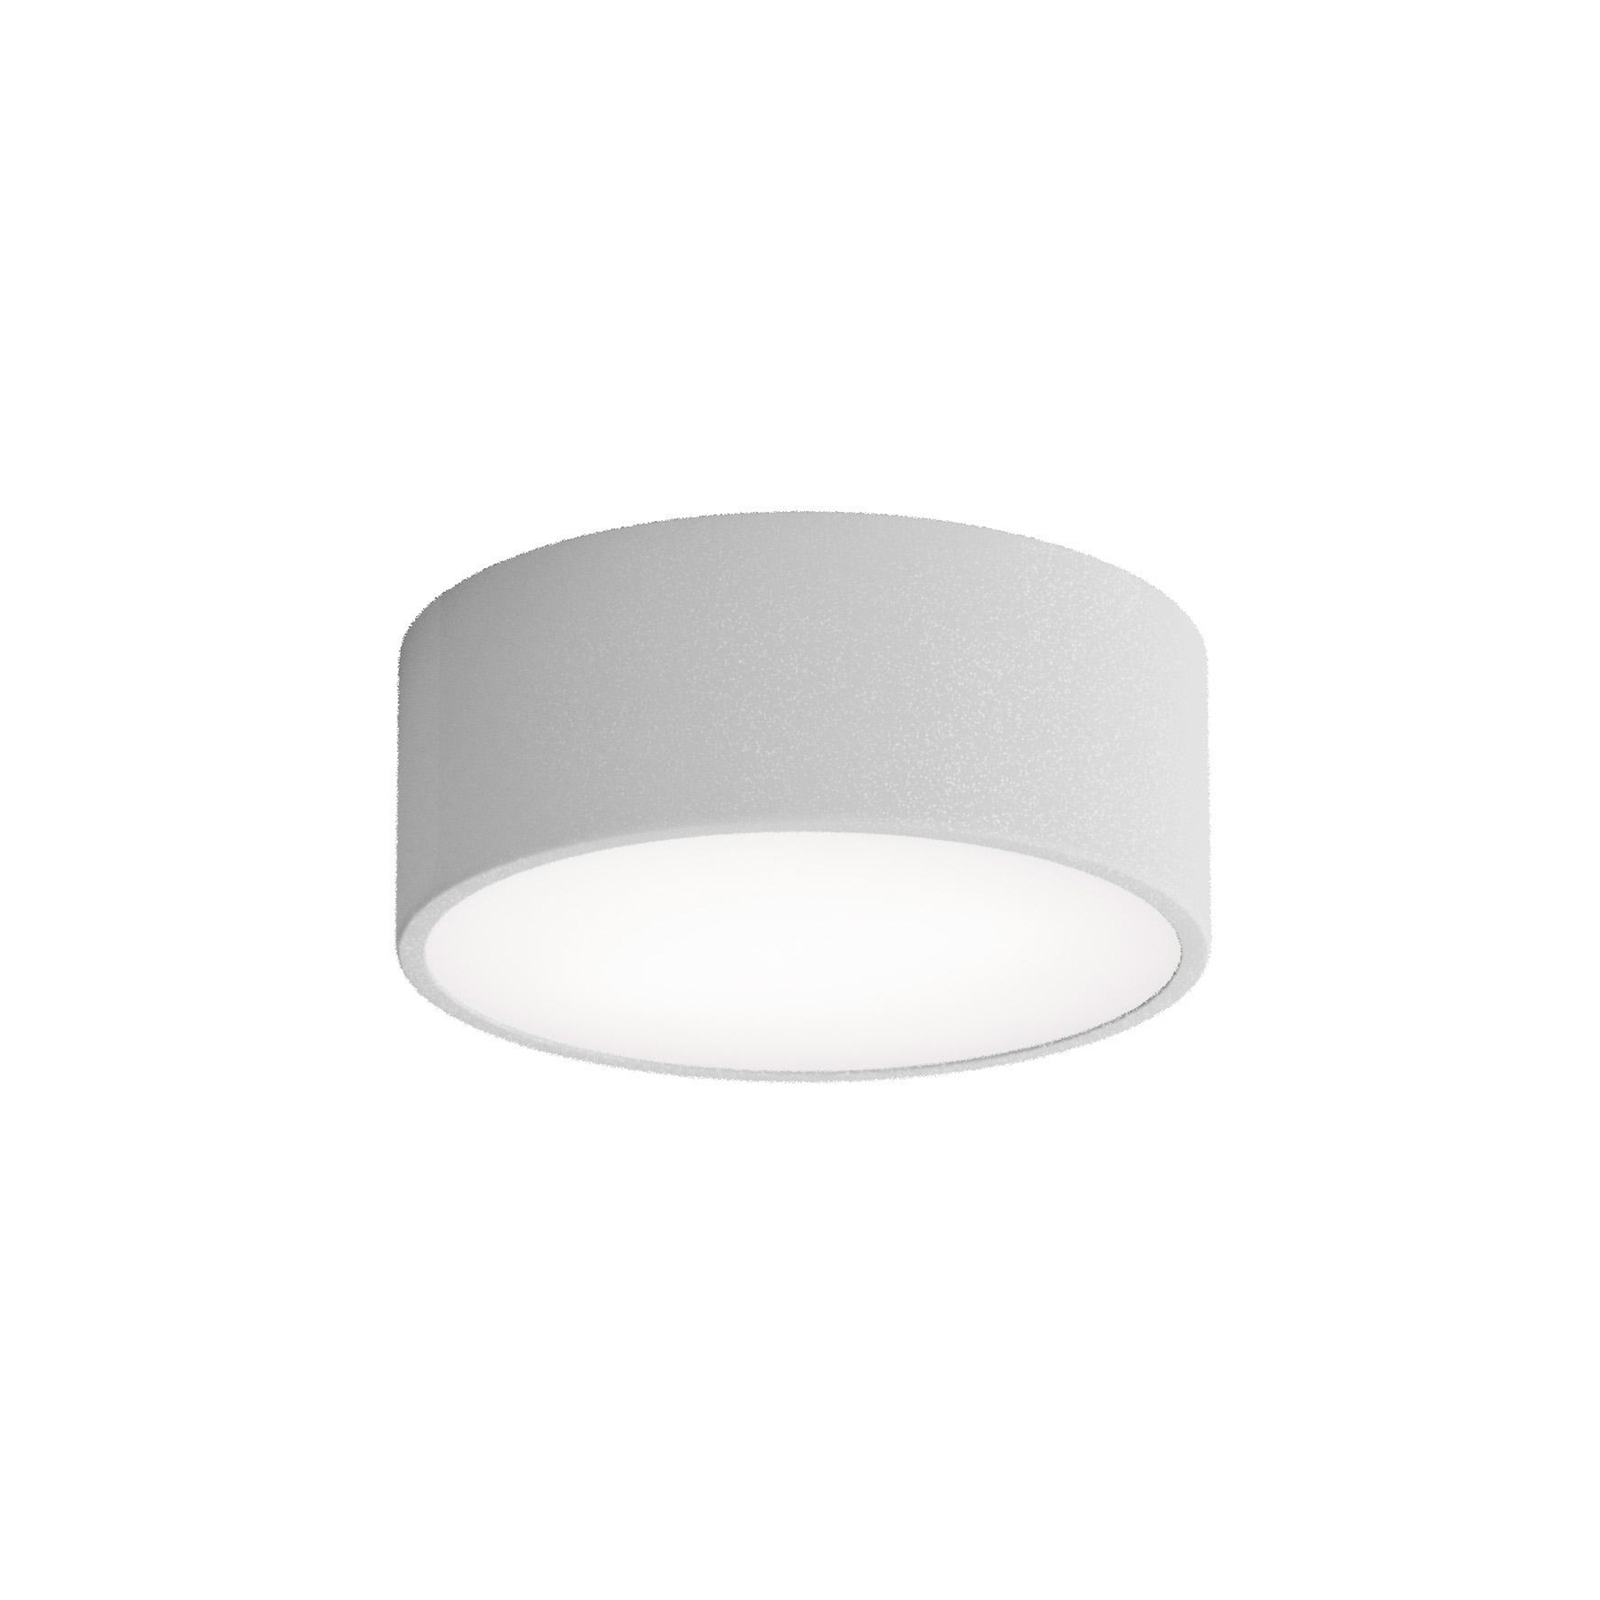 Cleo plafondlamp, grijs, Ø 20 cm, metaal, IP54